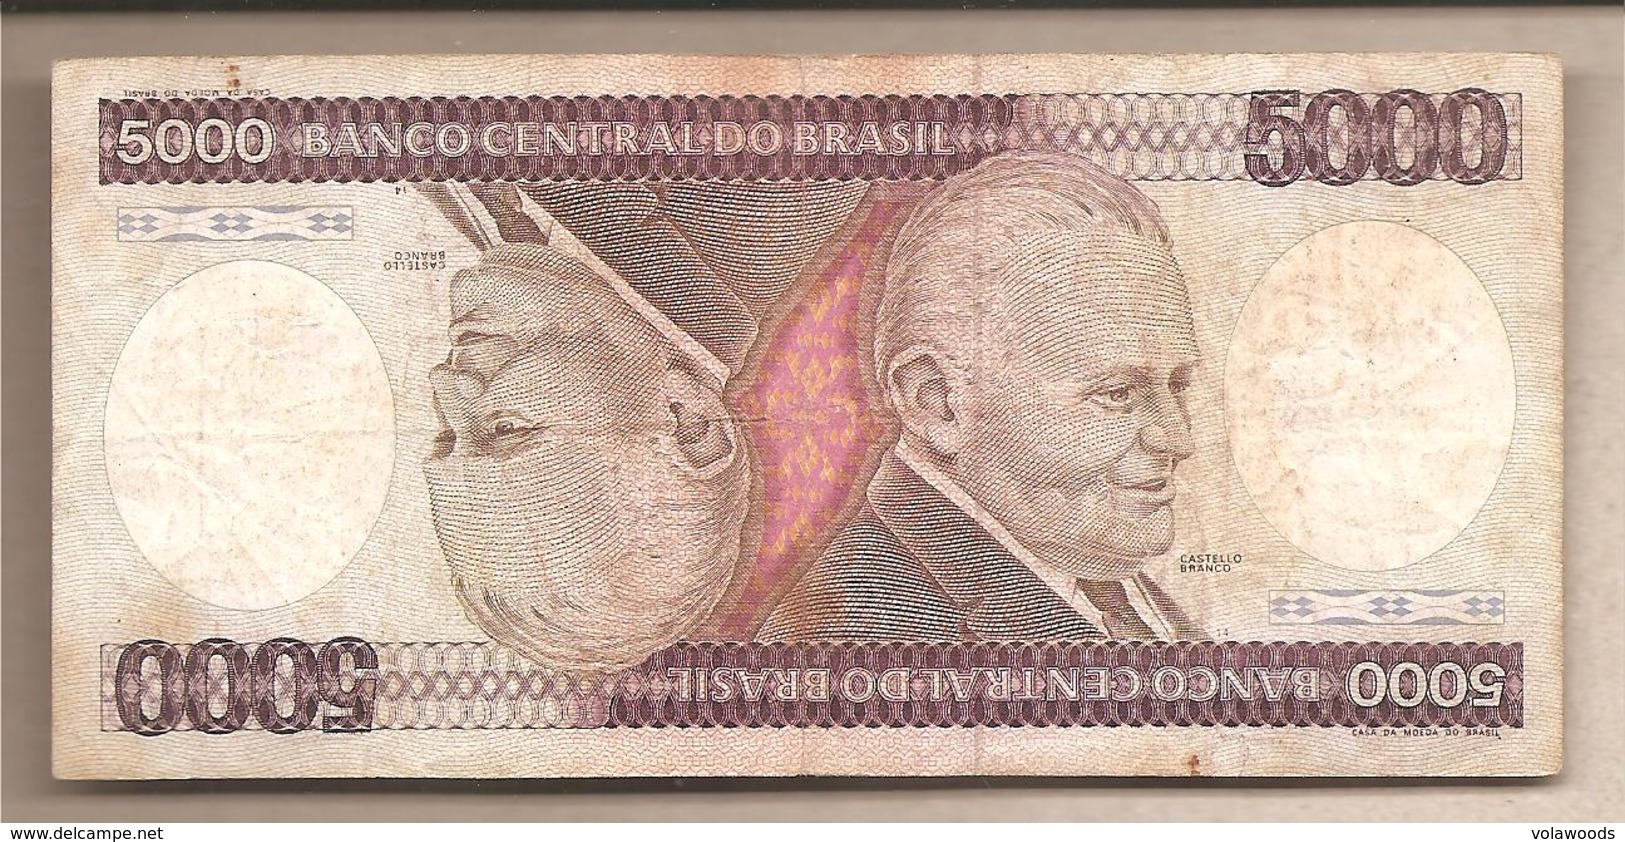 Brasile - Banconota Circolata Da 5000 Cruzeiros P-202b - 1983 - Brazil